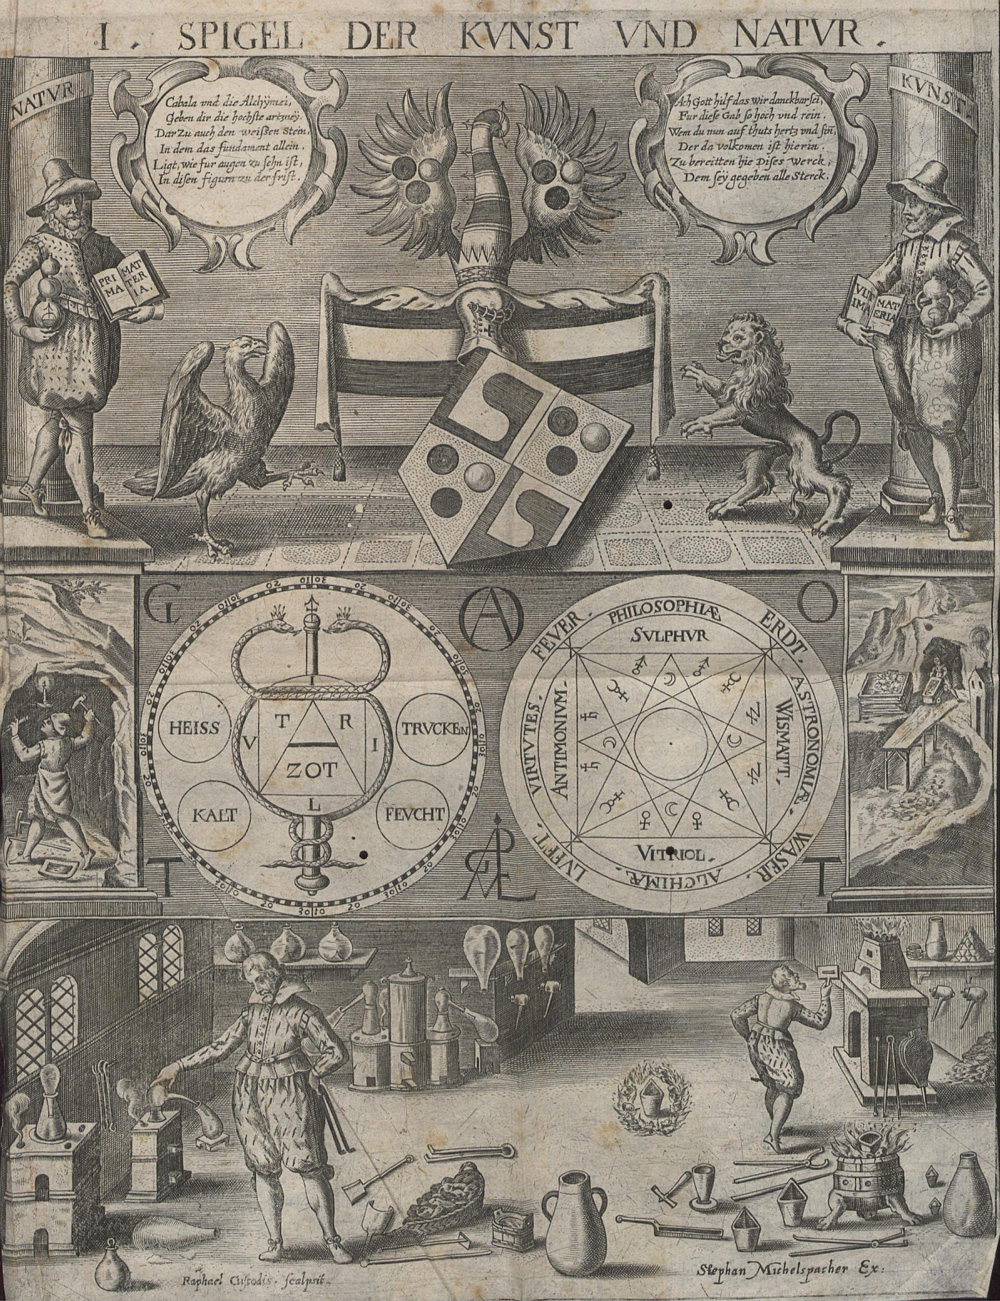 Cabala: Spiegel der Kunst und Natur, Michelspacher, 1615